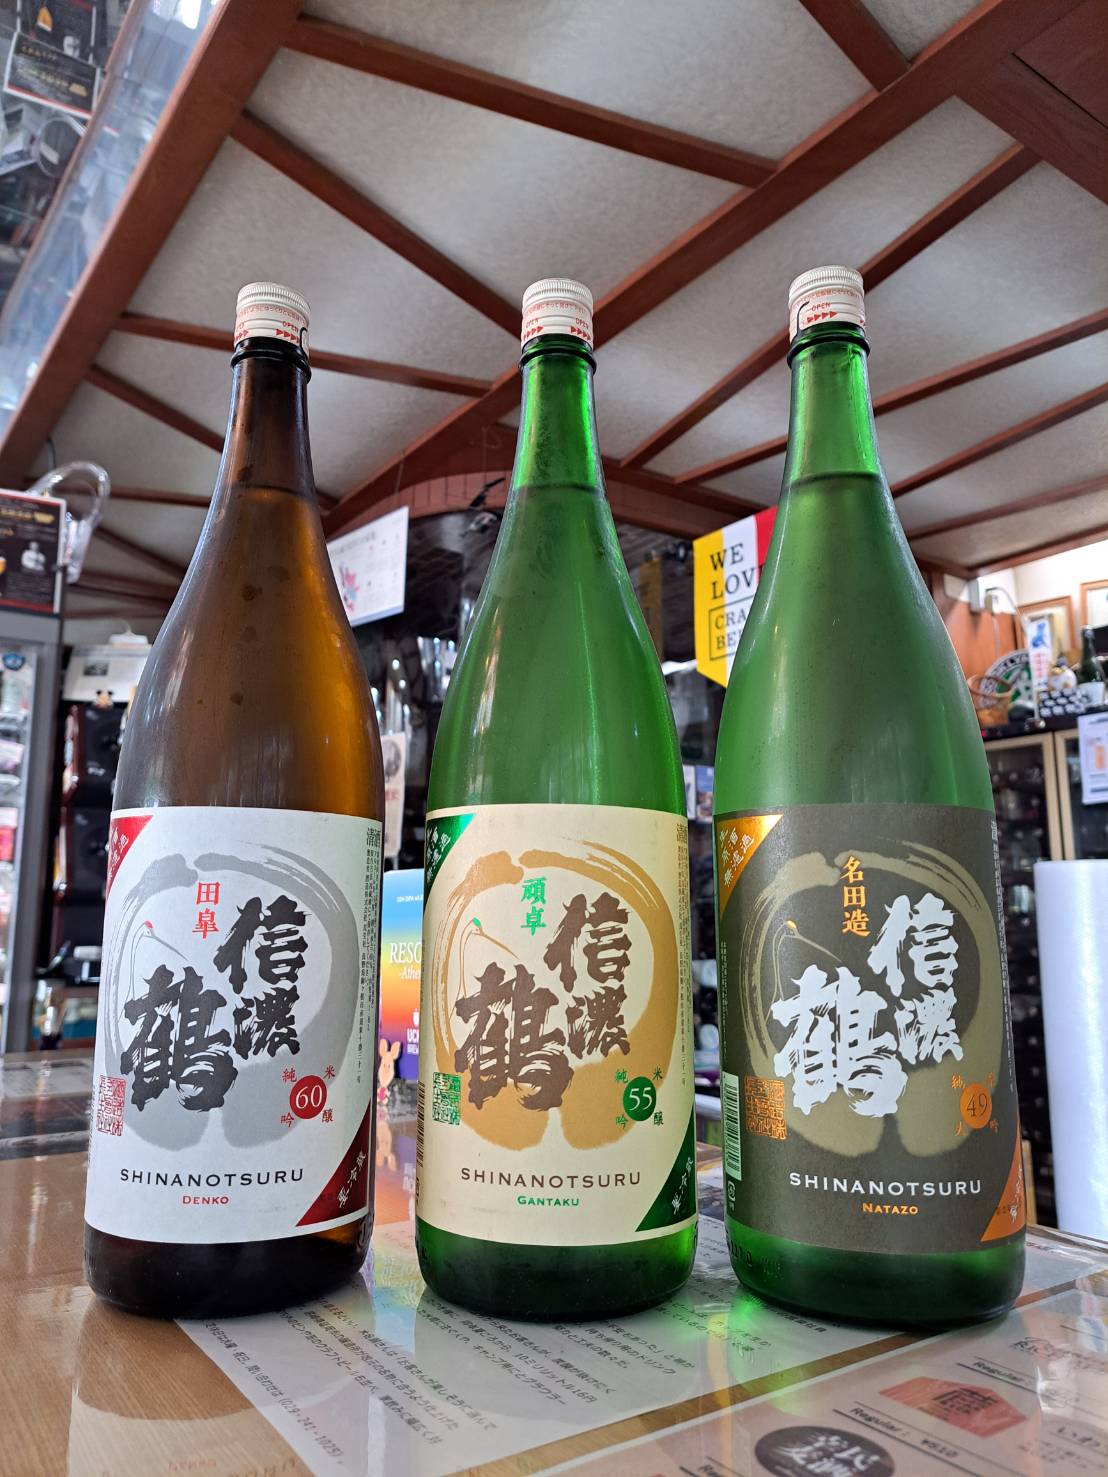 『信濃鶴さんの生原酒3種類が味わえる絶好のチャンスです』